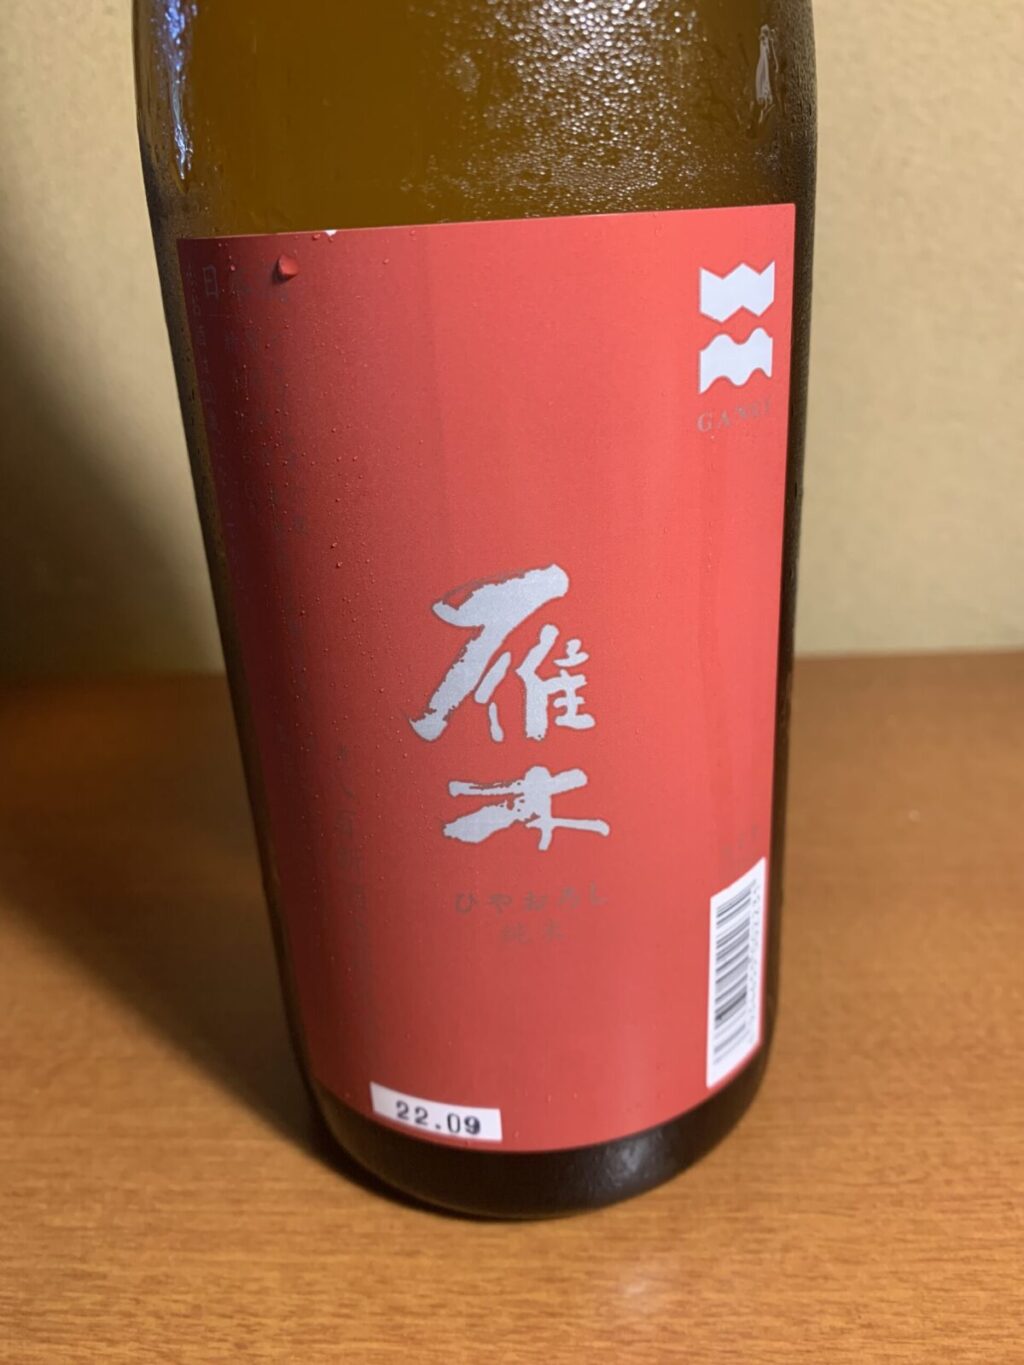 山口の日本酒『雁木ひやおろし』はコク深い甘みも切れよい後口